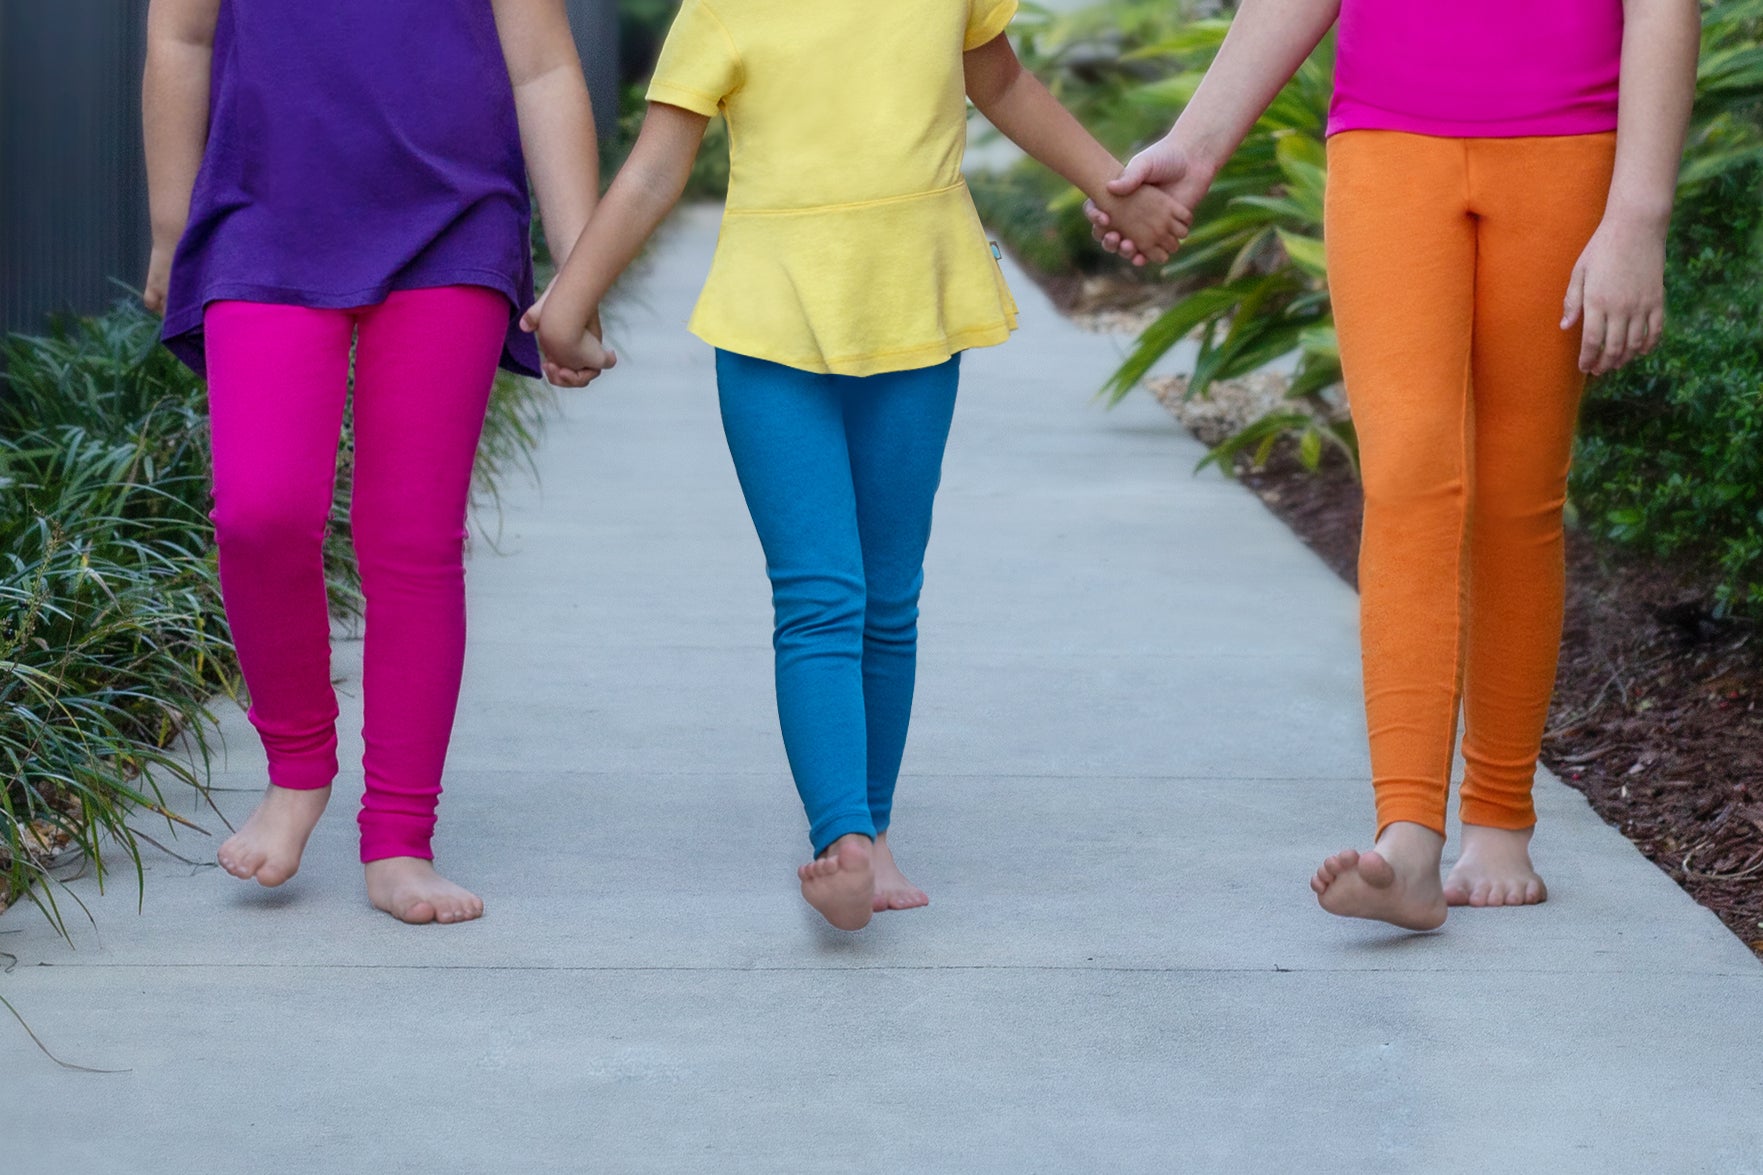 DOCHY Baby Girls' 4-Pack Leggings Cotton Basic Legging for Kids